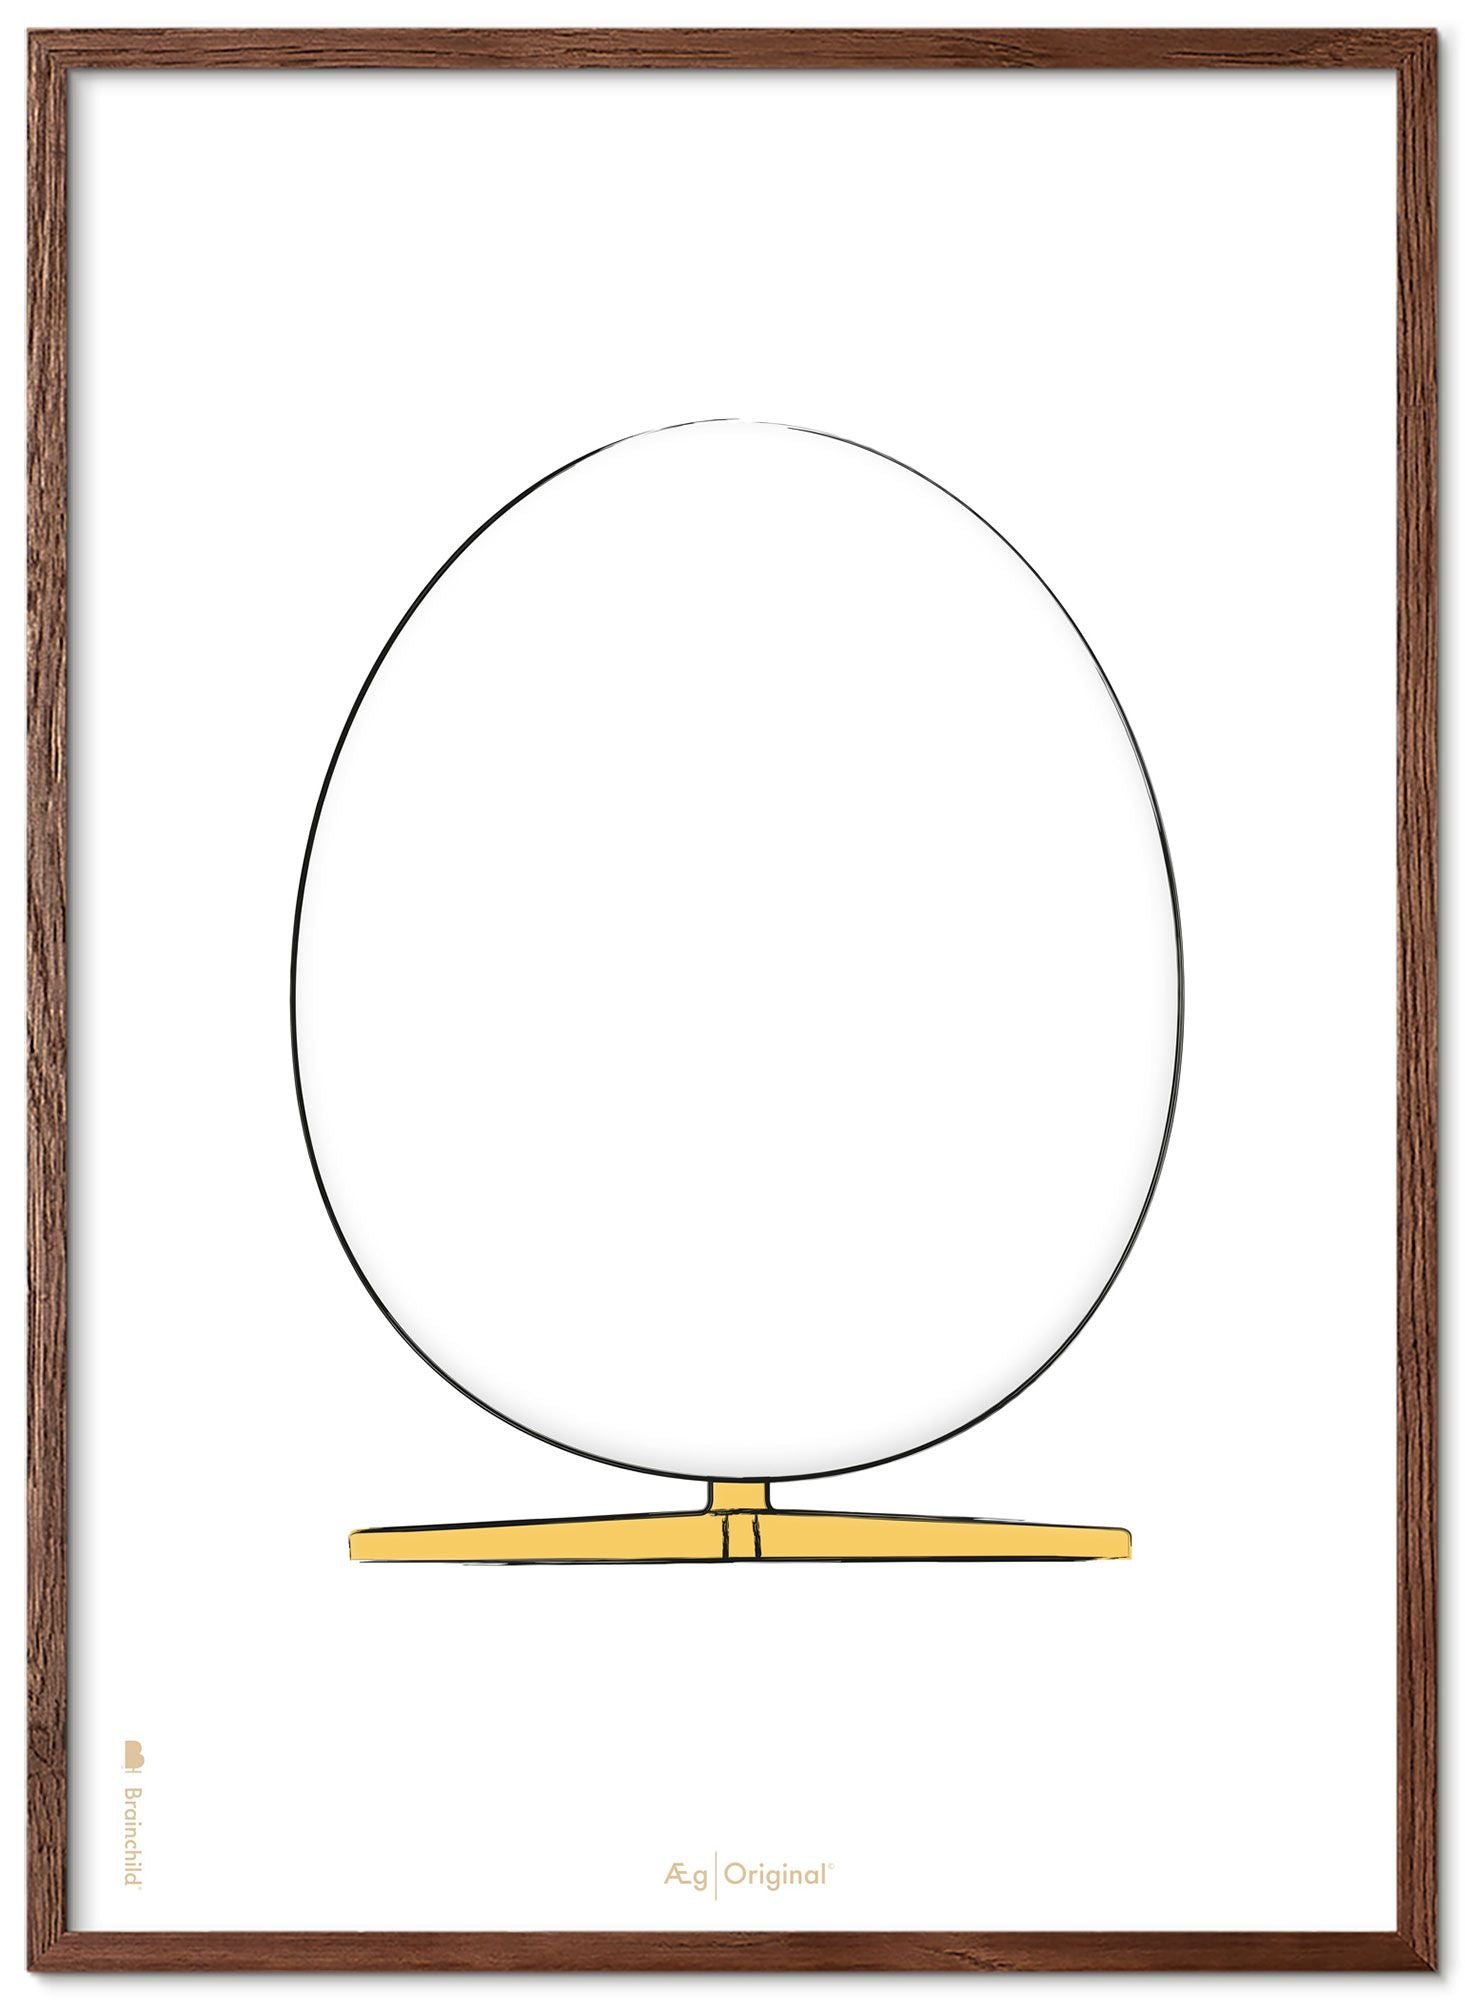 Prepare el marco de póster de boceto de diseño de huevo hecho de madera oscura de 30x40 cm, fondo blanco